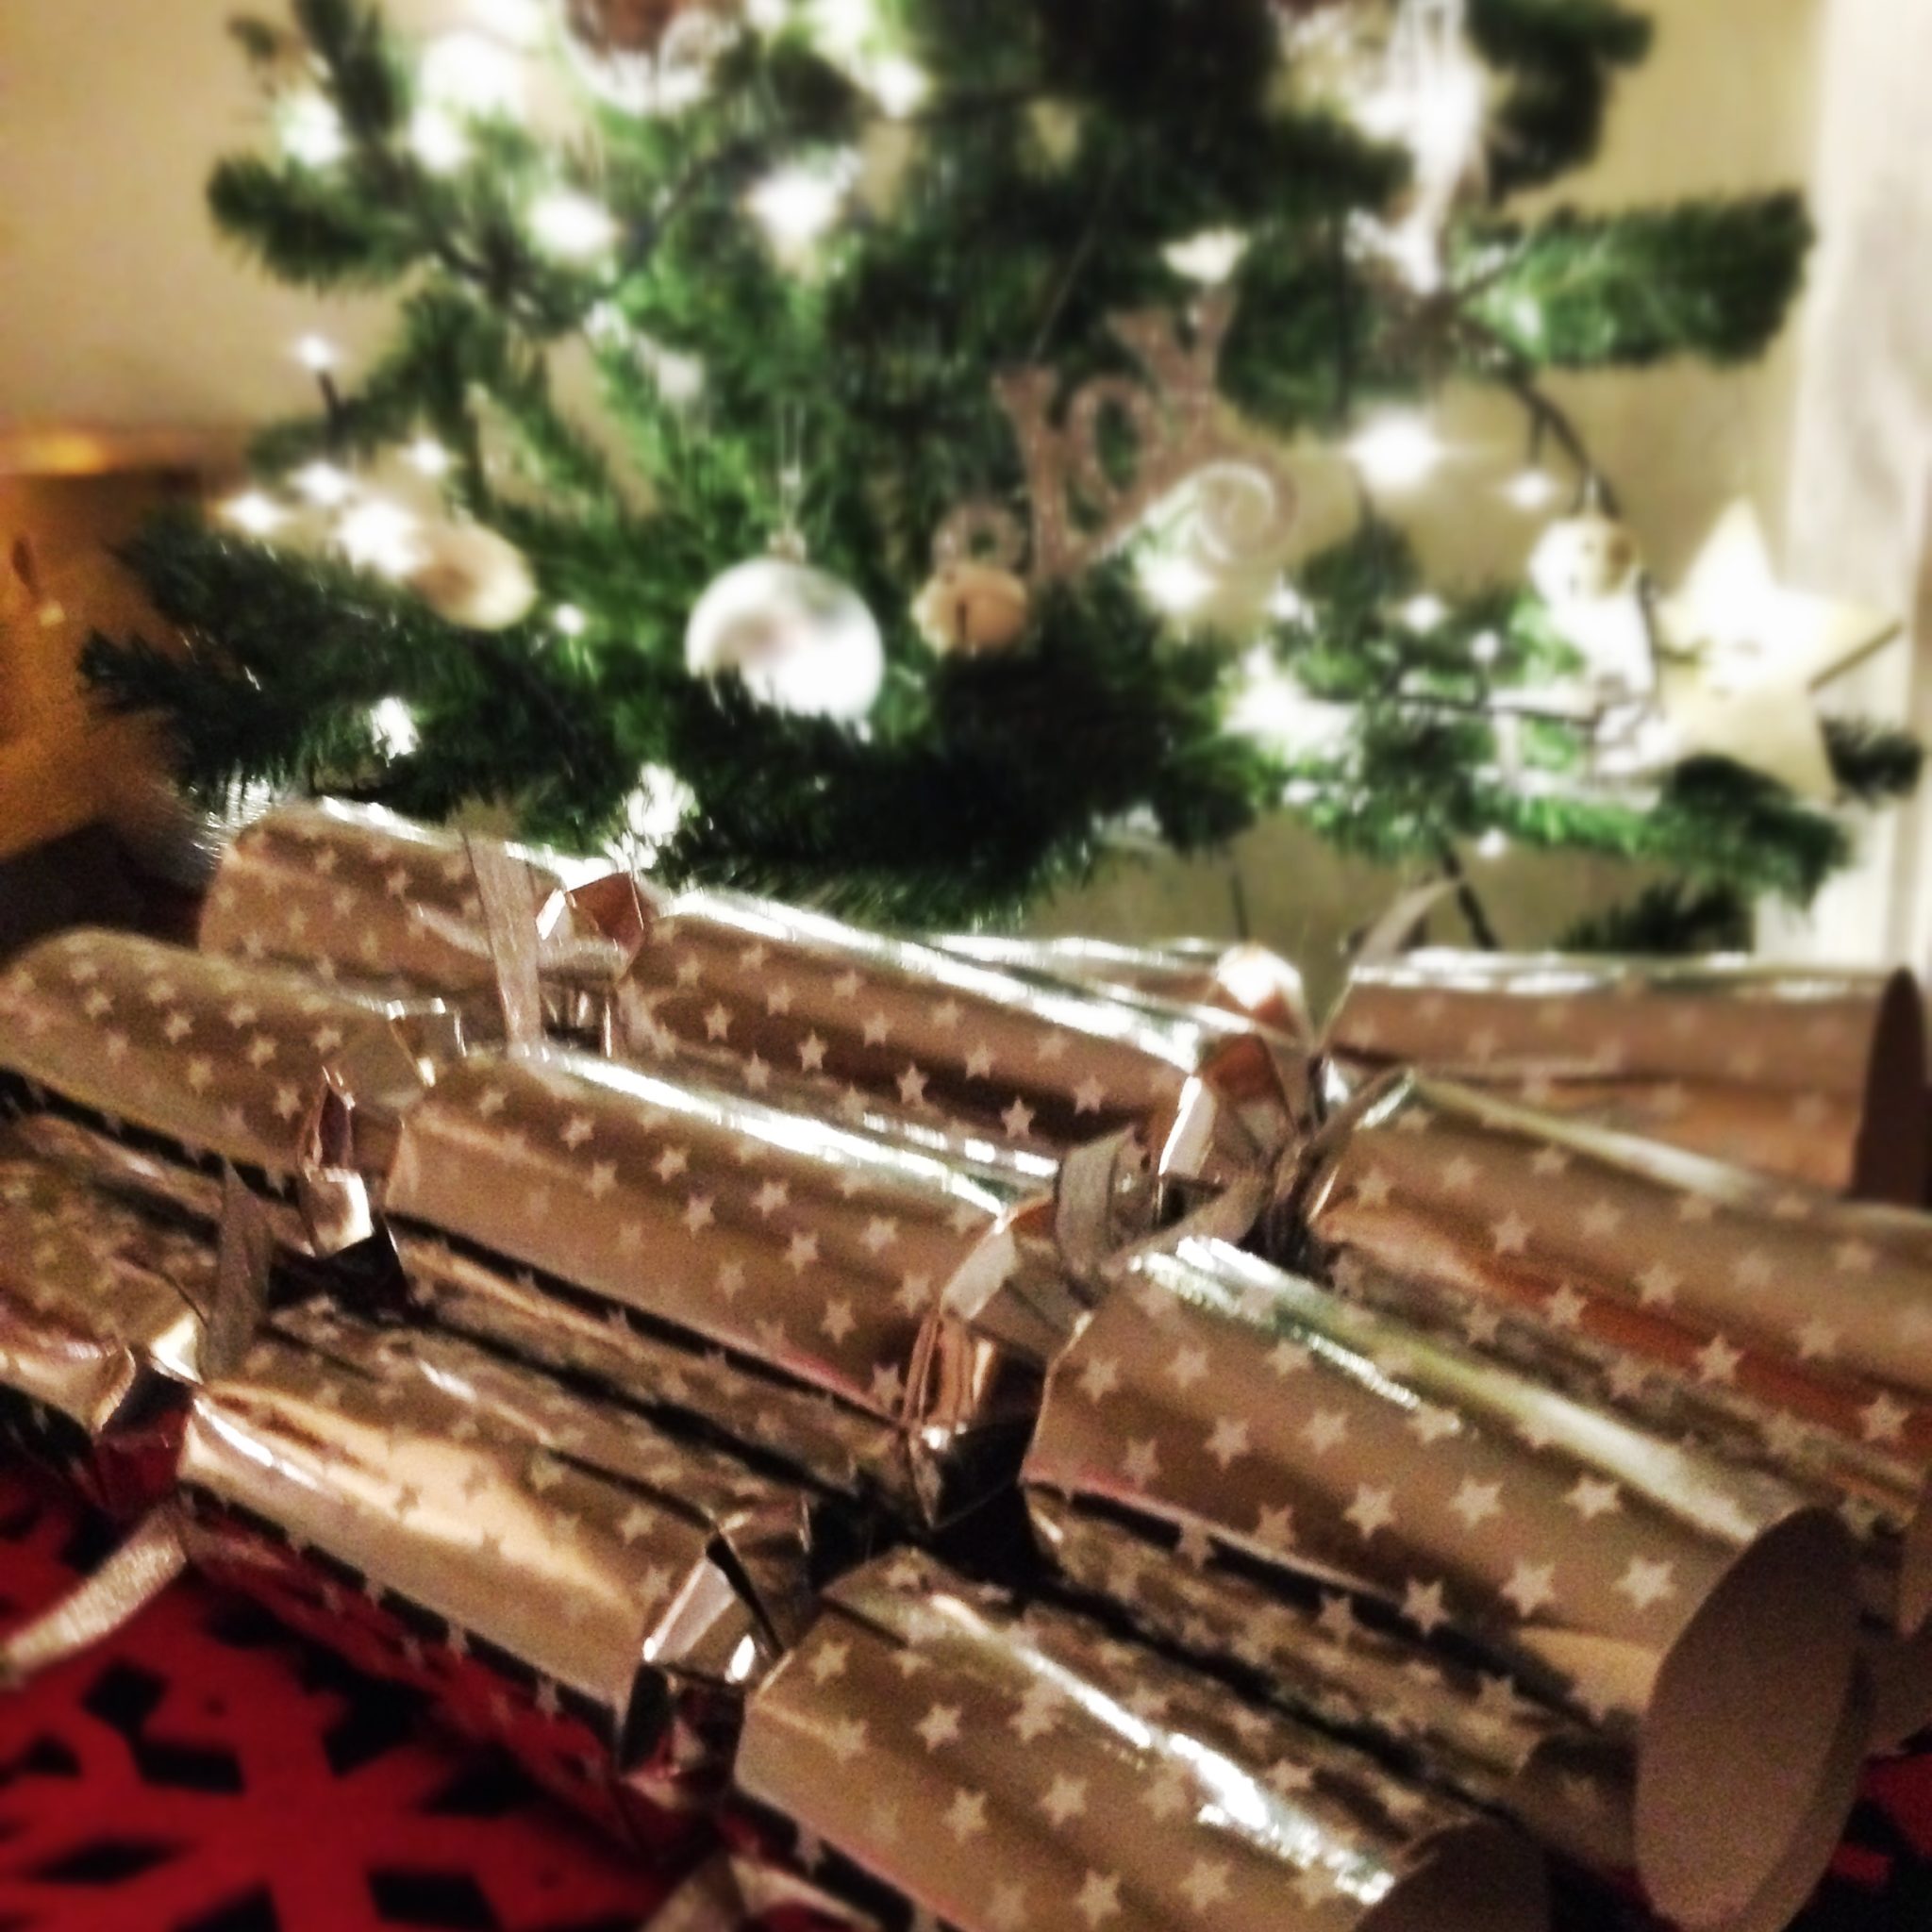 17 December – it’s a Christmas cracker!